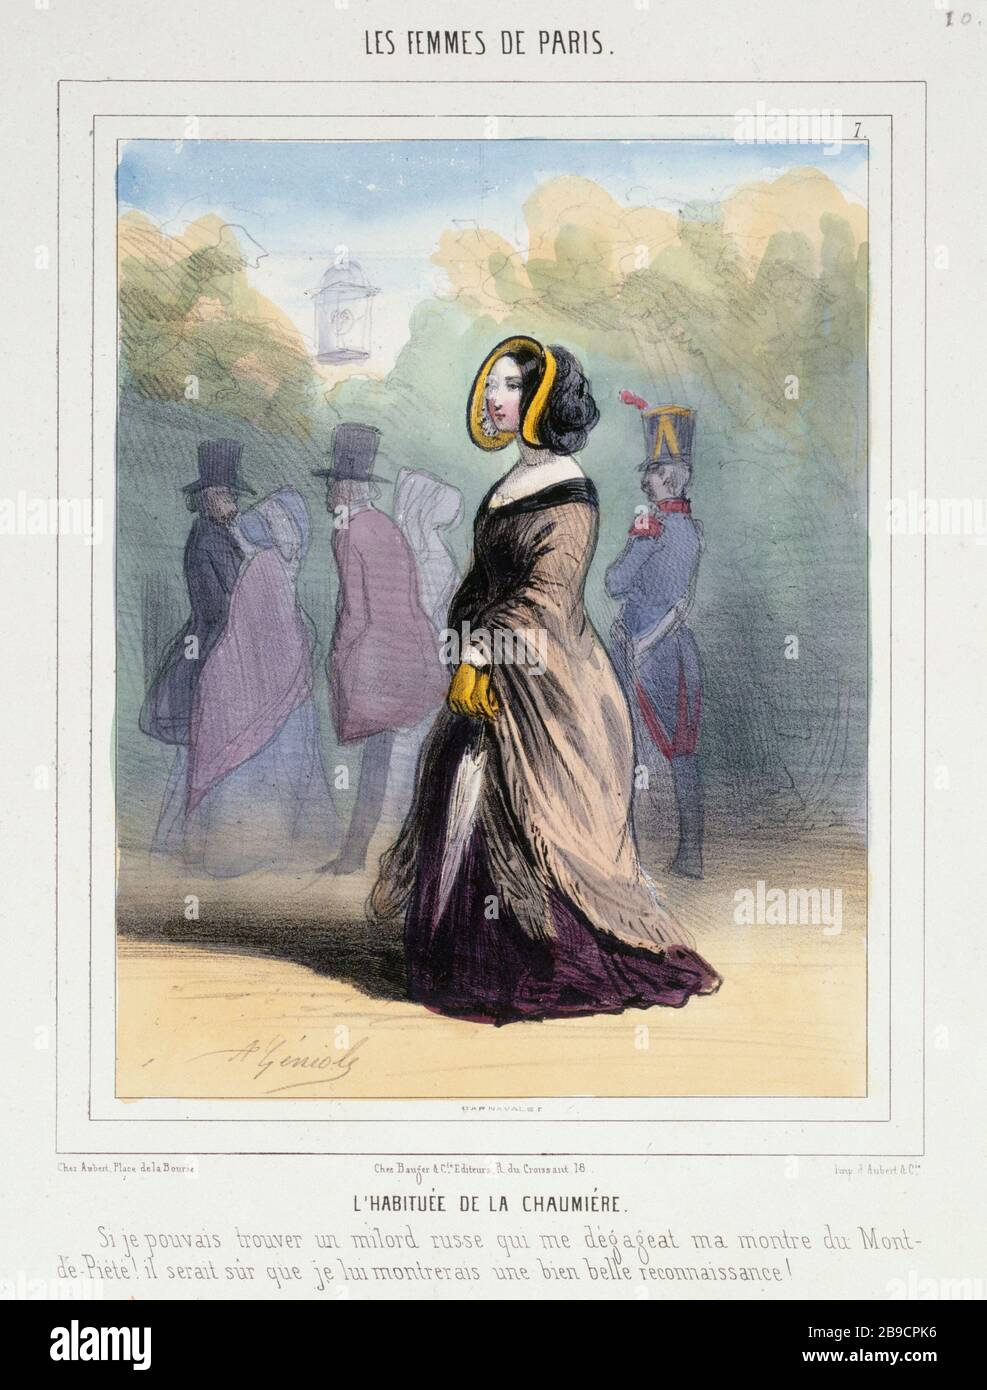 FRAUEN VON PARIS - der Neuling VON COTTAGE Alfred Geniole (1813-1861). "Les Femmes de Paris - L'habituée de la Chaumière". Tiefdruck. Paris, musée Carnavalet. Stockfoto